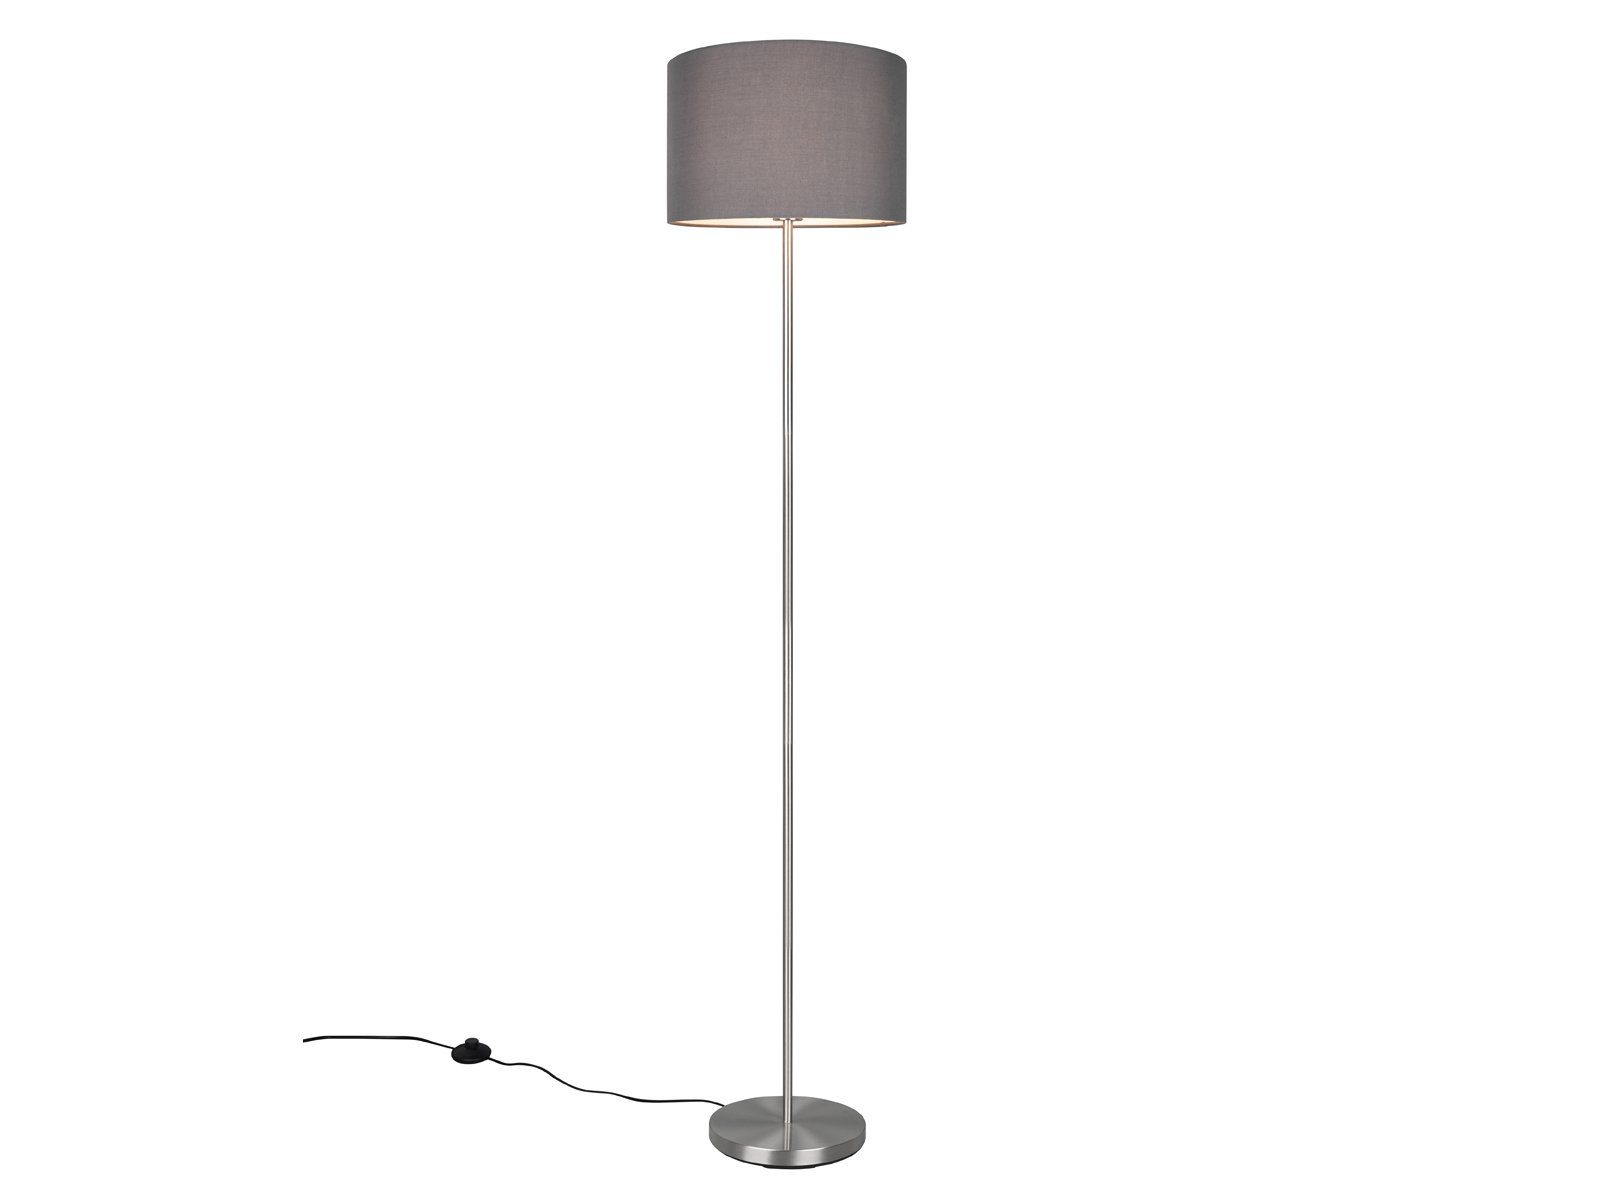 Lampenschirm Stehlampe, H: 160cm LED Grau Stoff wechselbar, Warmweiß, große dimmbar, meineWunschleuchte Design-klassiker Dimmfunktion, LED